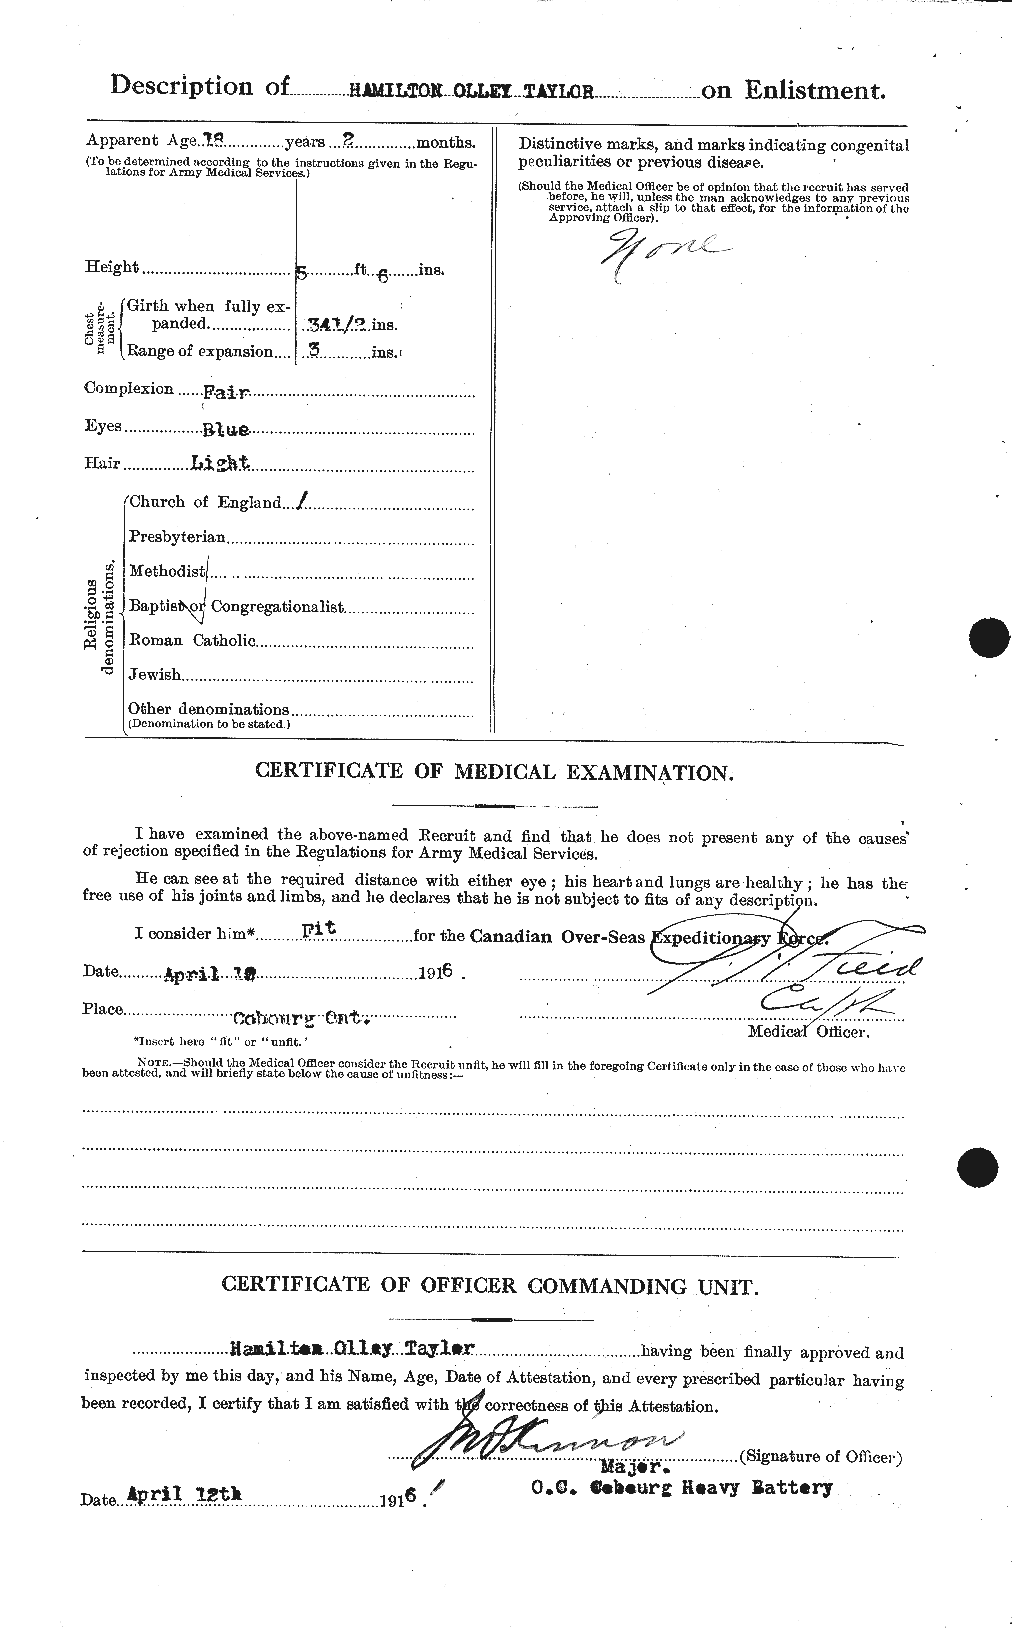 Dossiers du Personnel de la Première Guerre mondiale - CEC 626398b